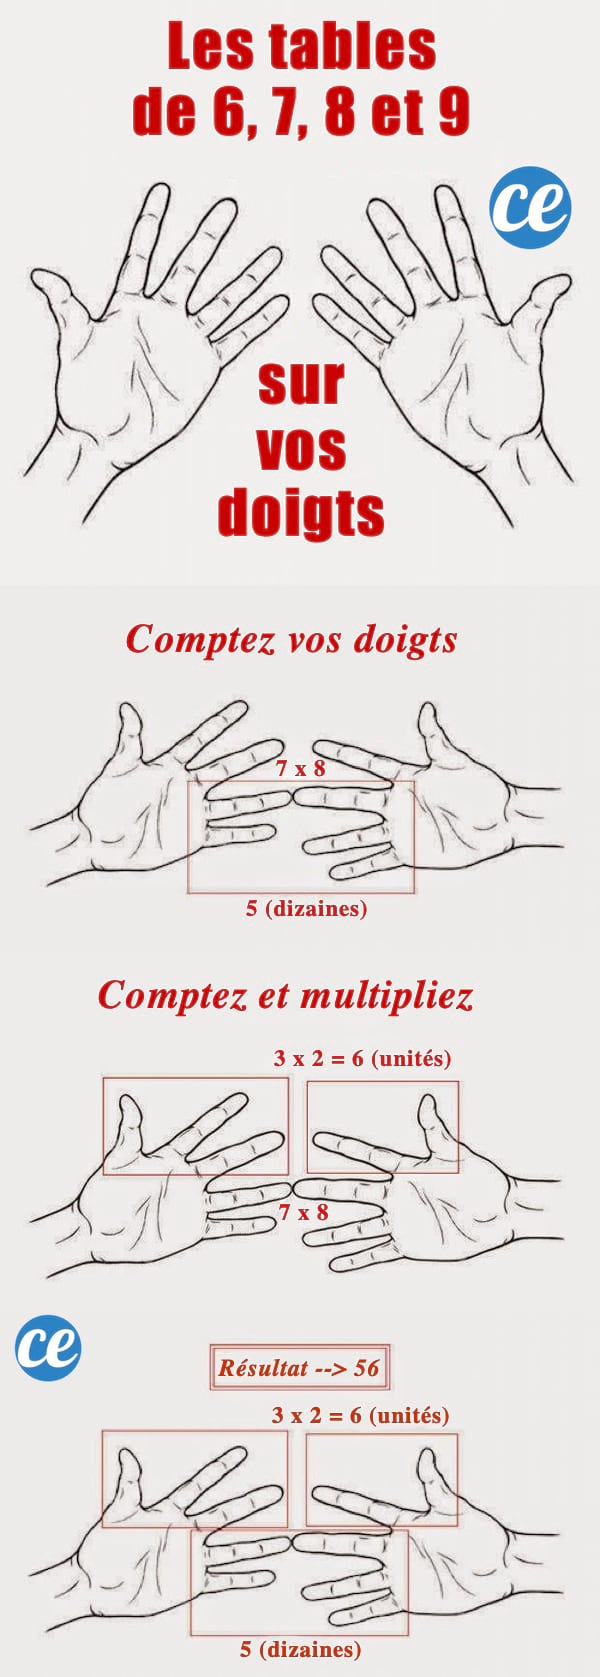 El truco fácil de usar los dedos para las tablas de 6, 7, 8 y 9